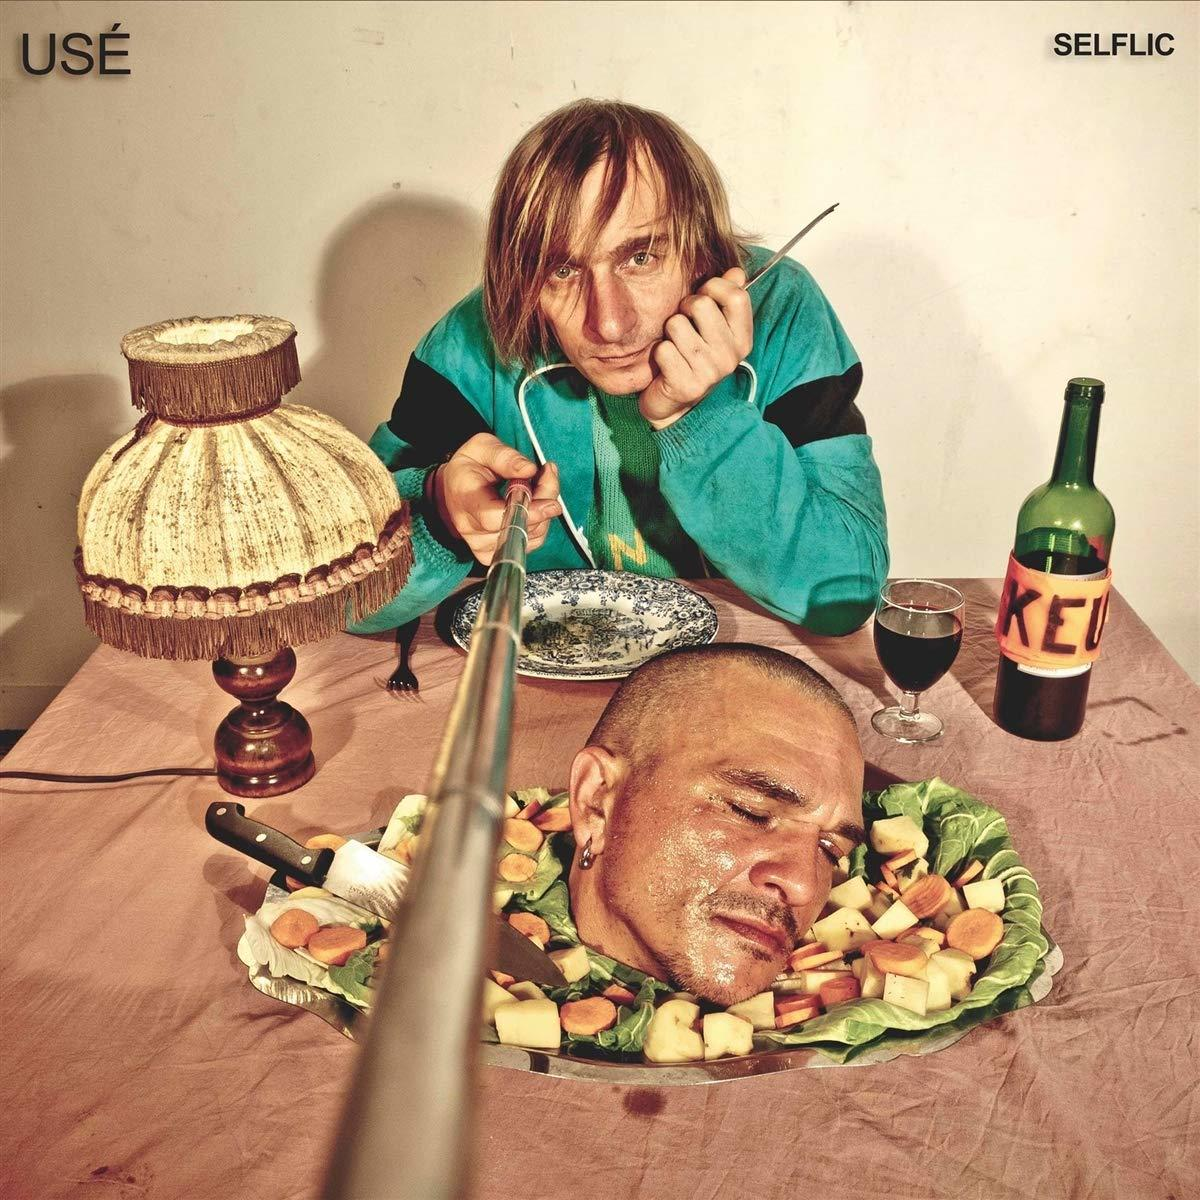 U.S.E. - selflic - (CD)